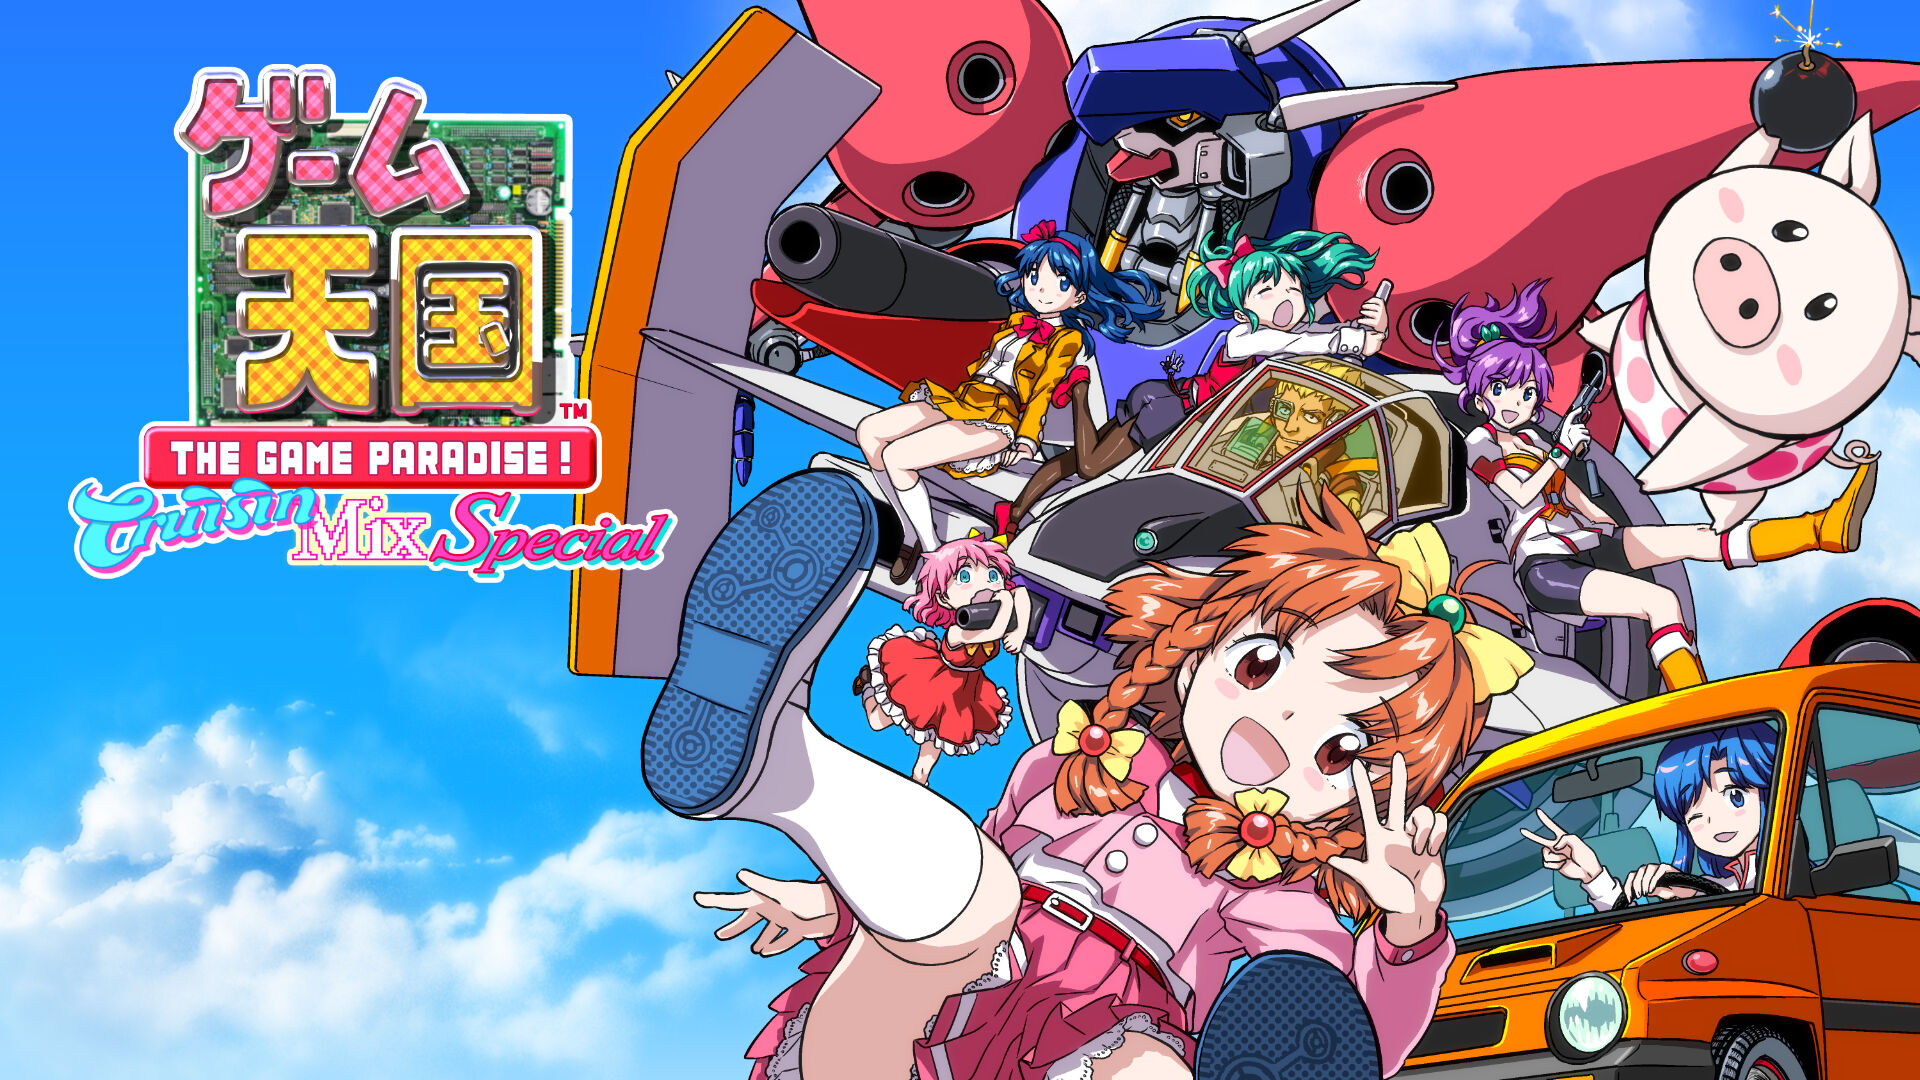 ゲーム天国 CruisinMix Special ダウンロード版 | My Nintendo Store